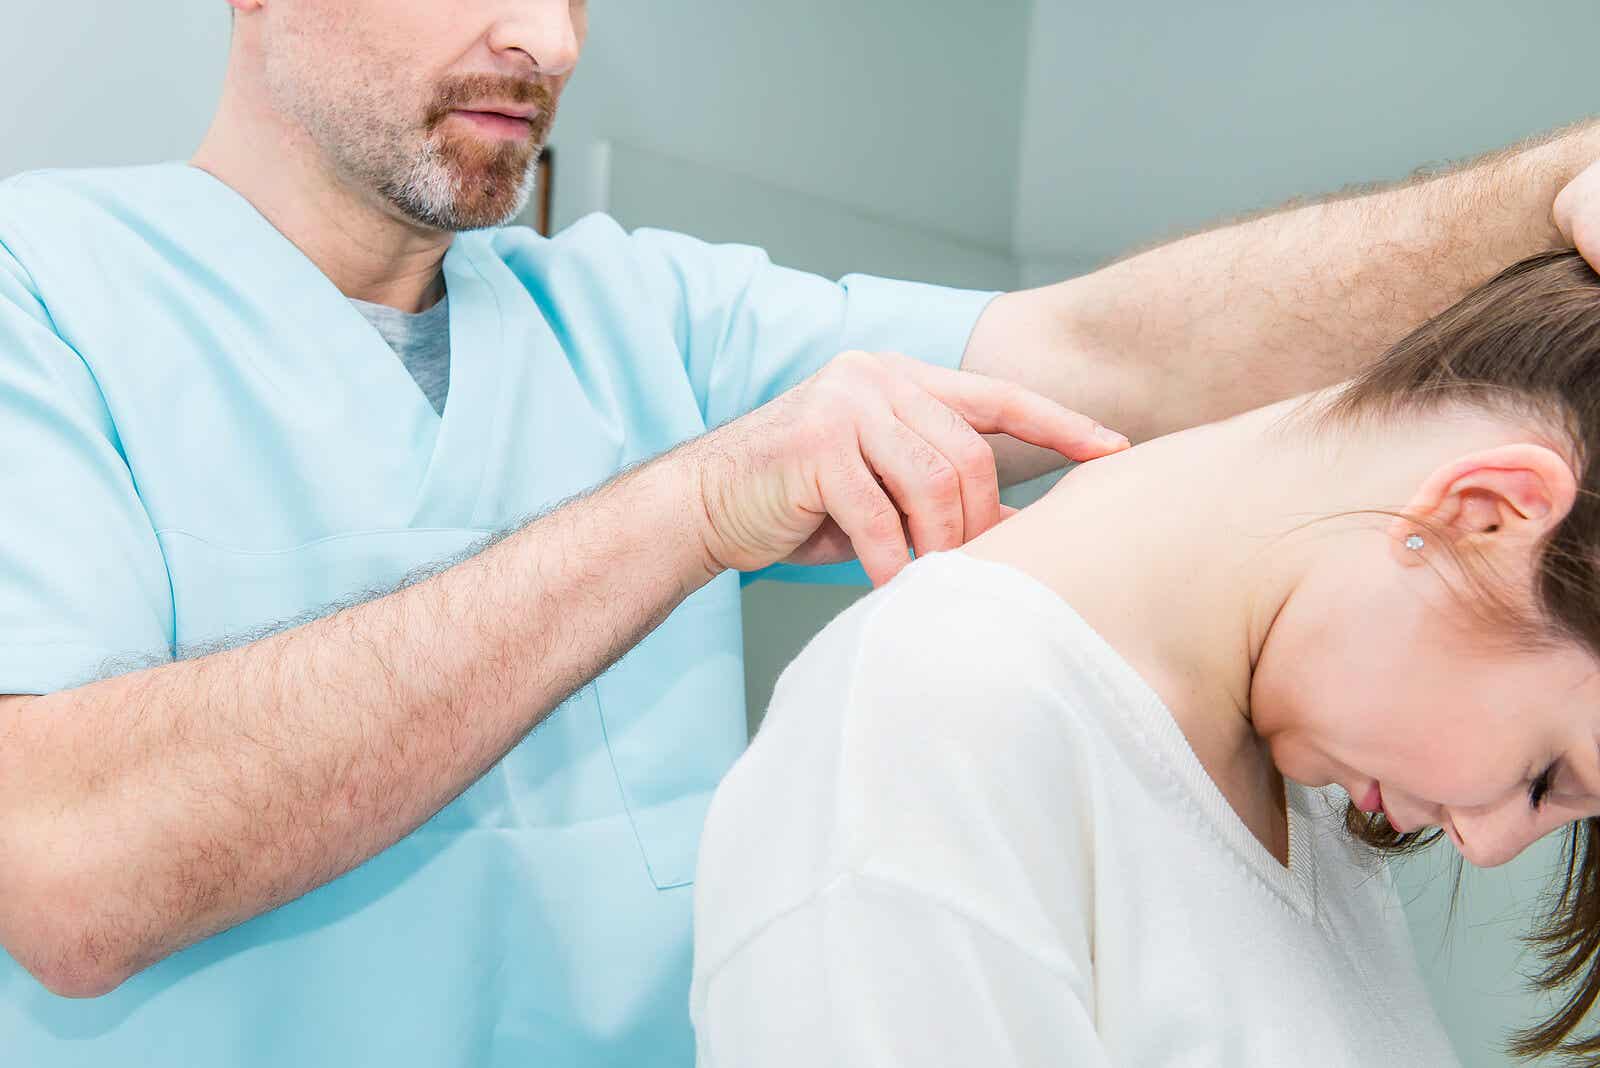 Læge tjekker patients rygrad før en laminektomi